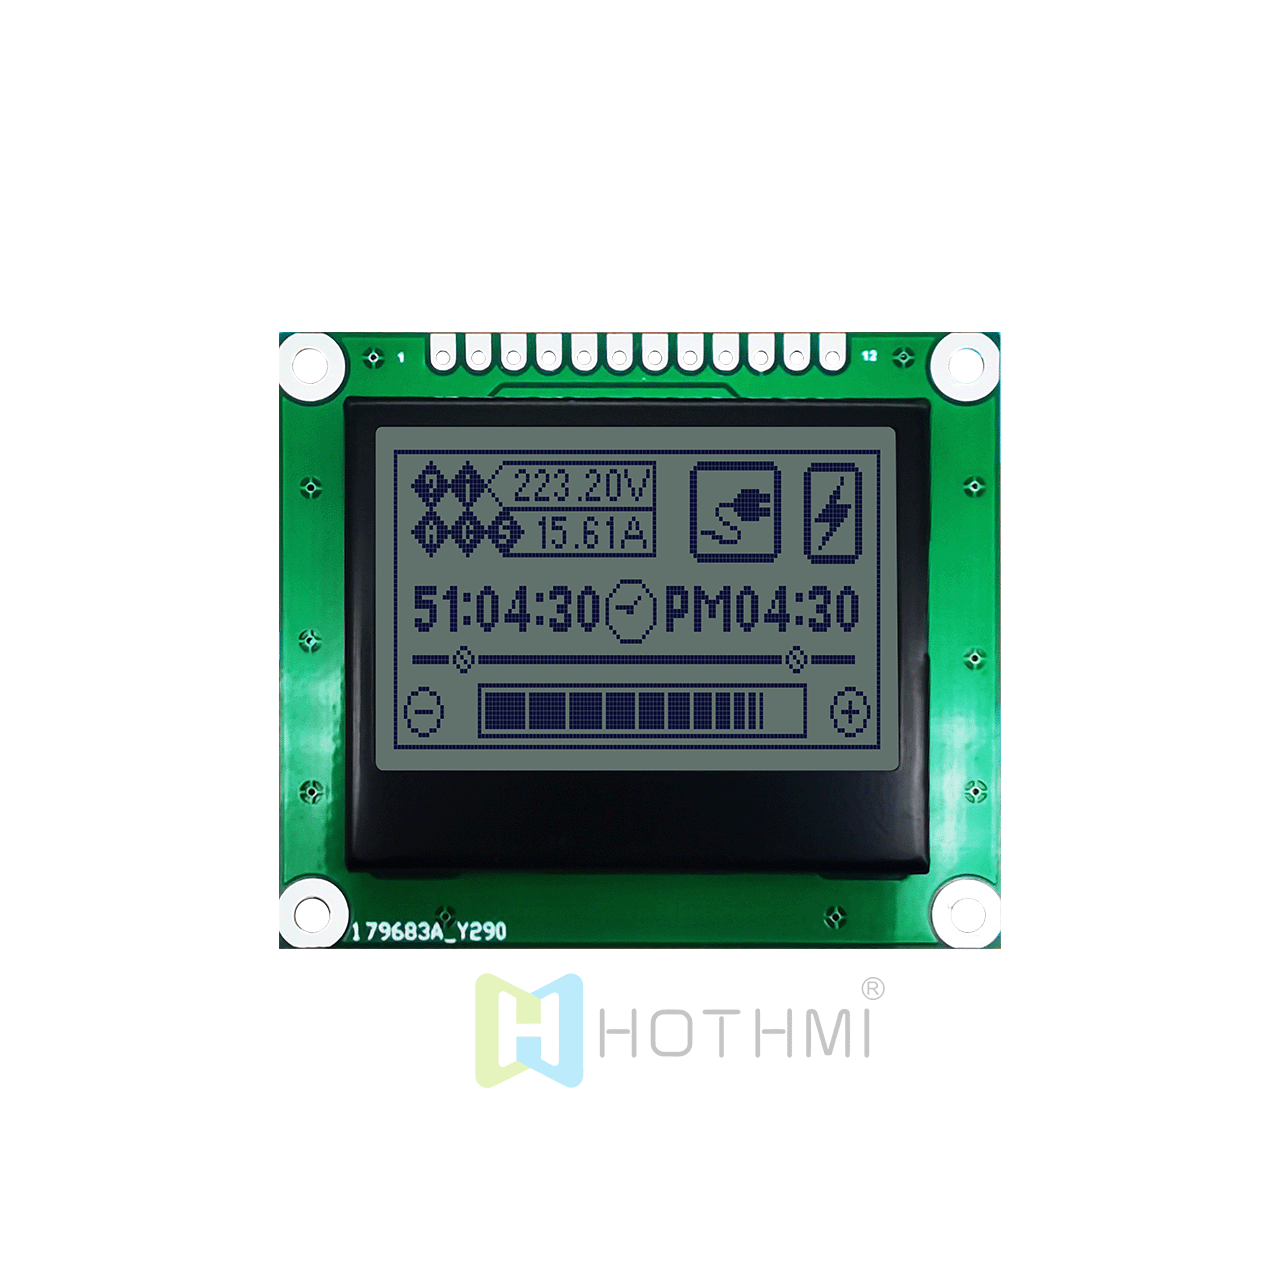 1.7 英寸 128x64 图形液晶块 | 128 x 64 图形 LCD  |  | STN +黄绿背光 | 3.3V